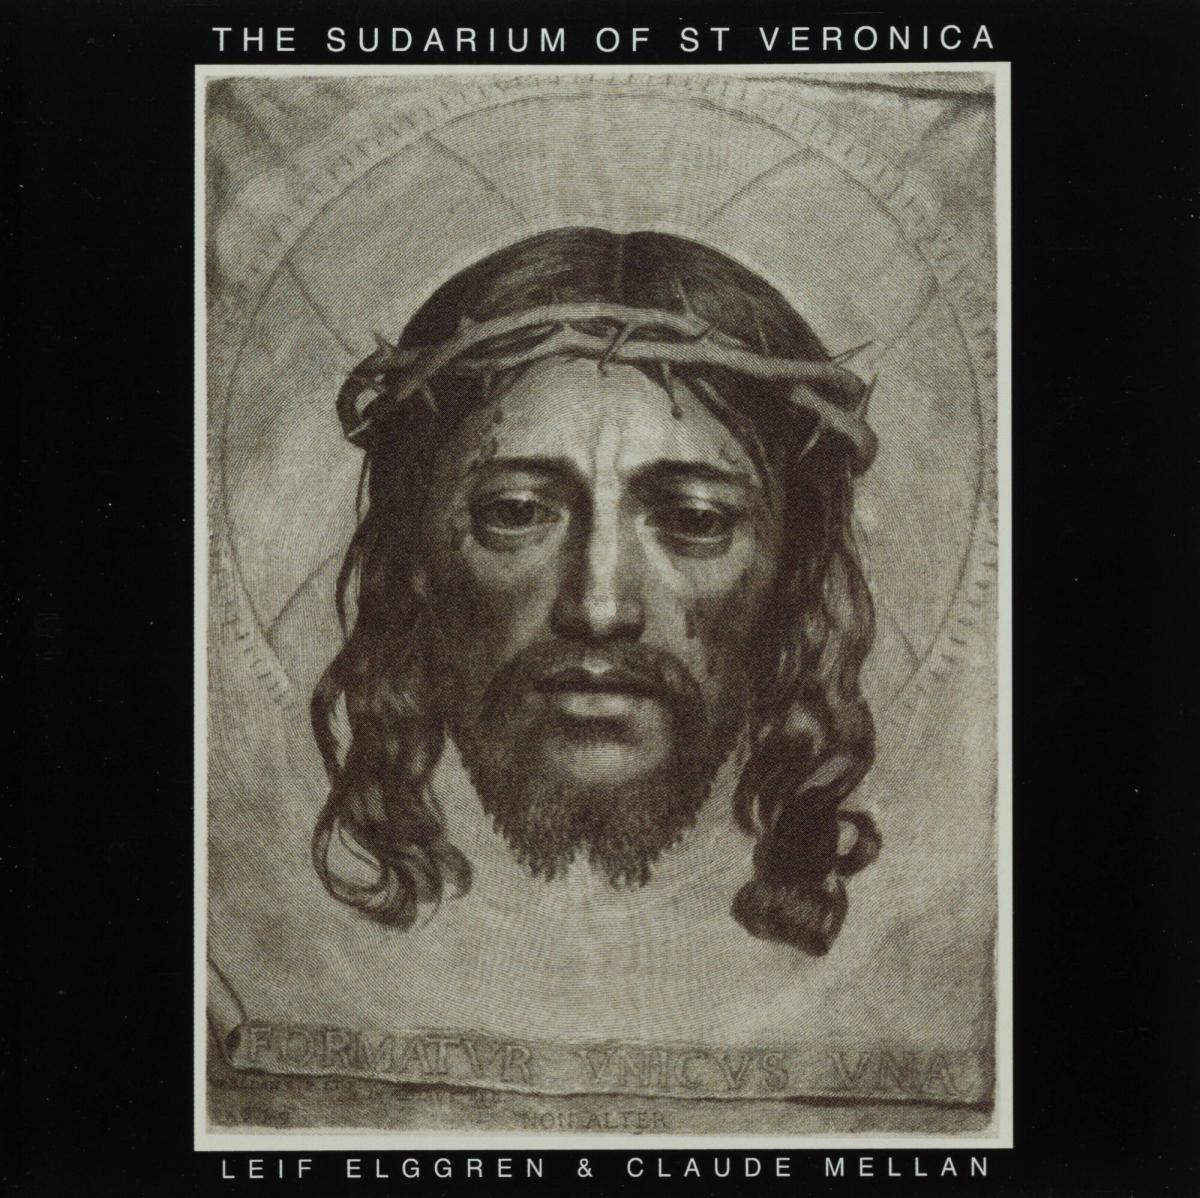 THE SUDARIUM OF ST VERONICA